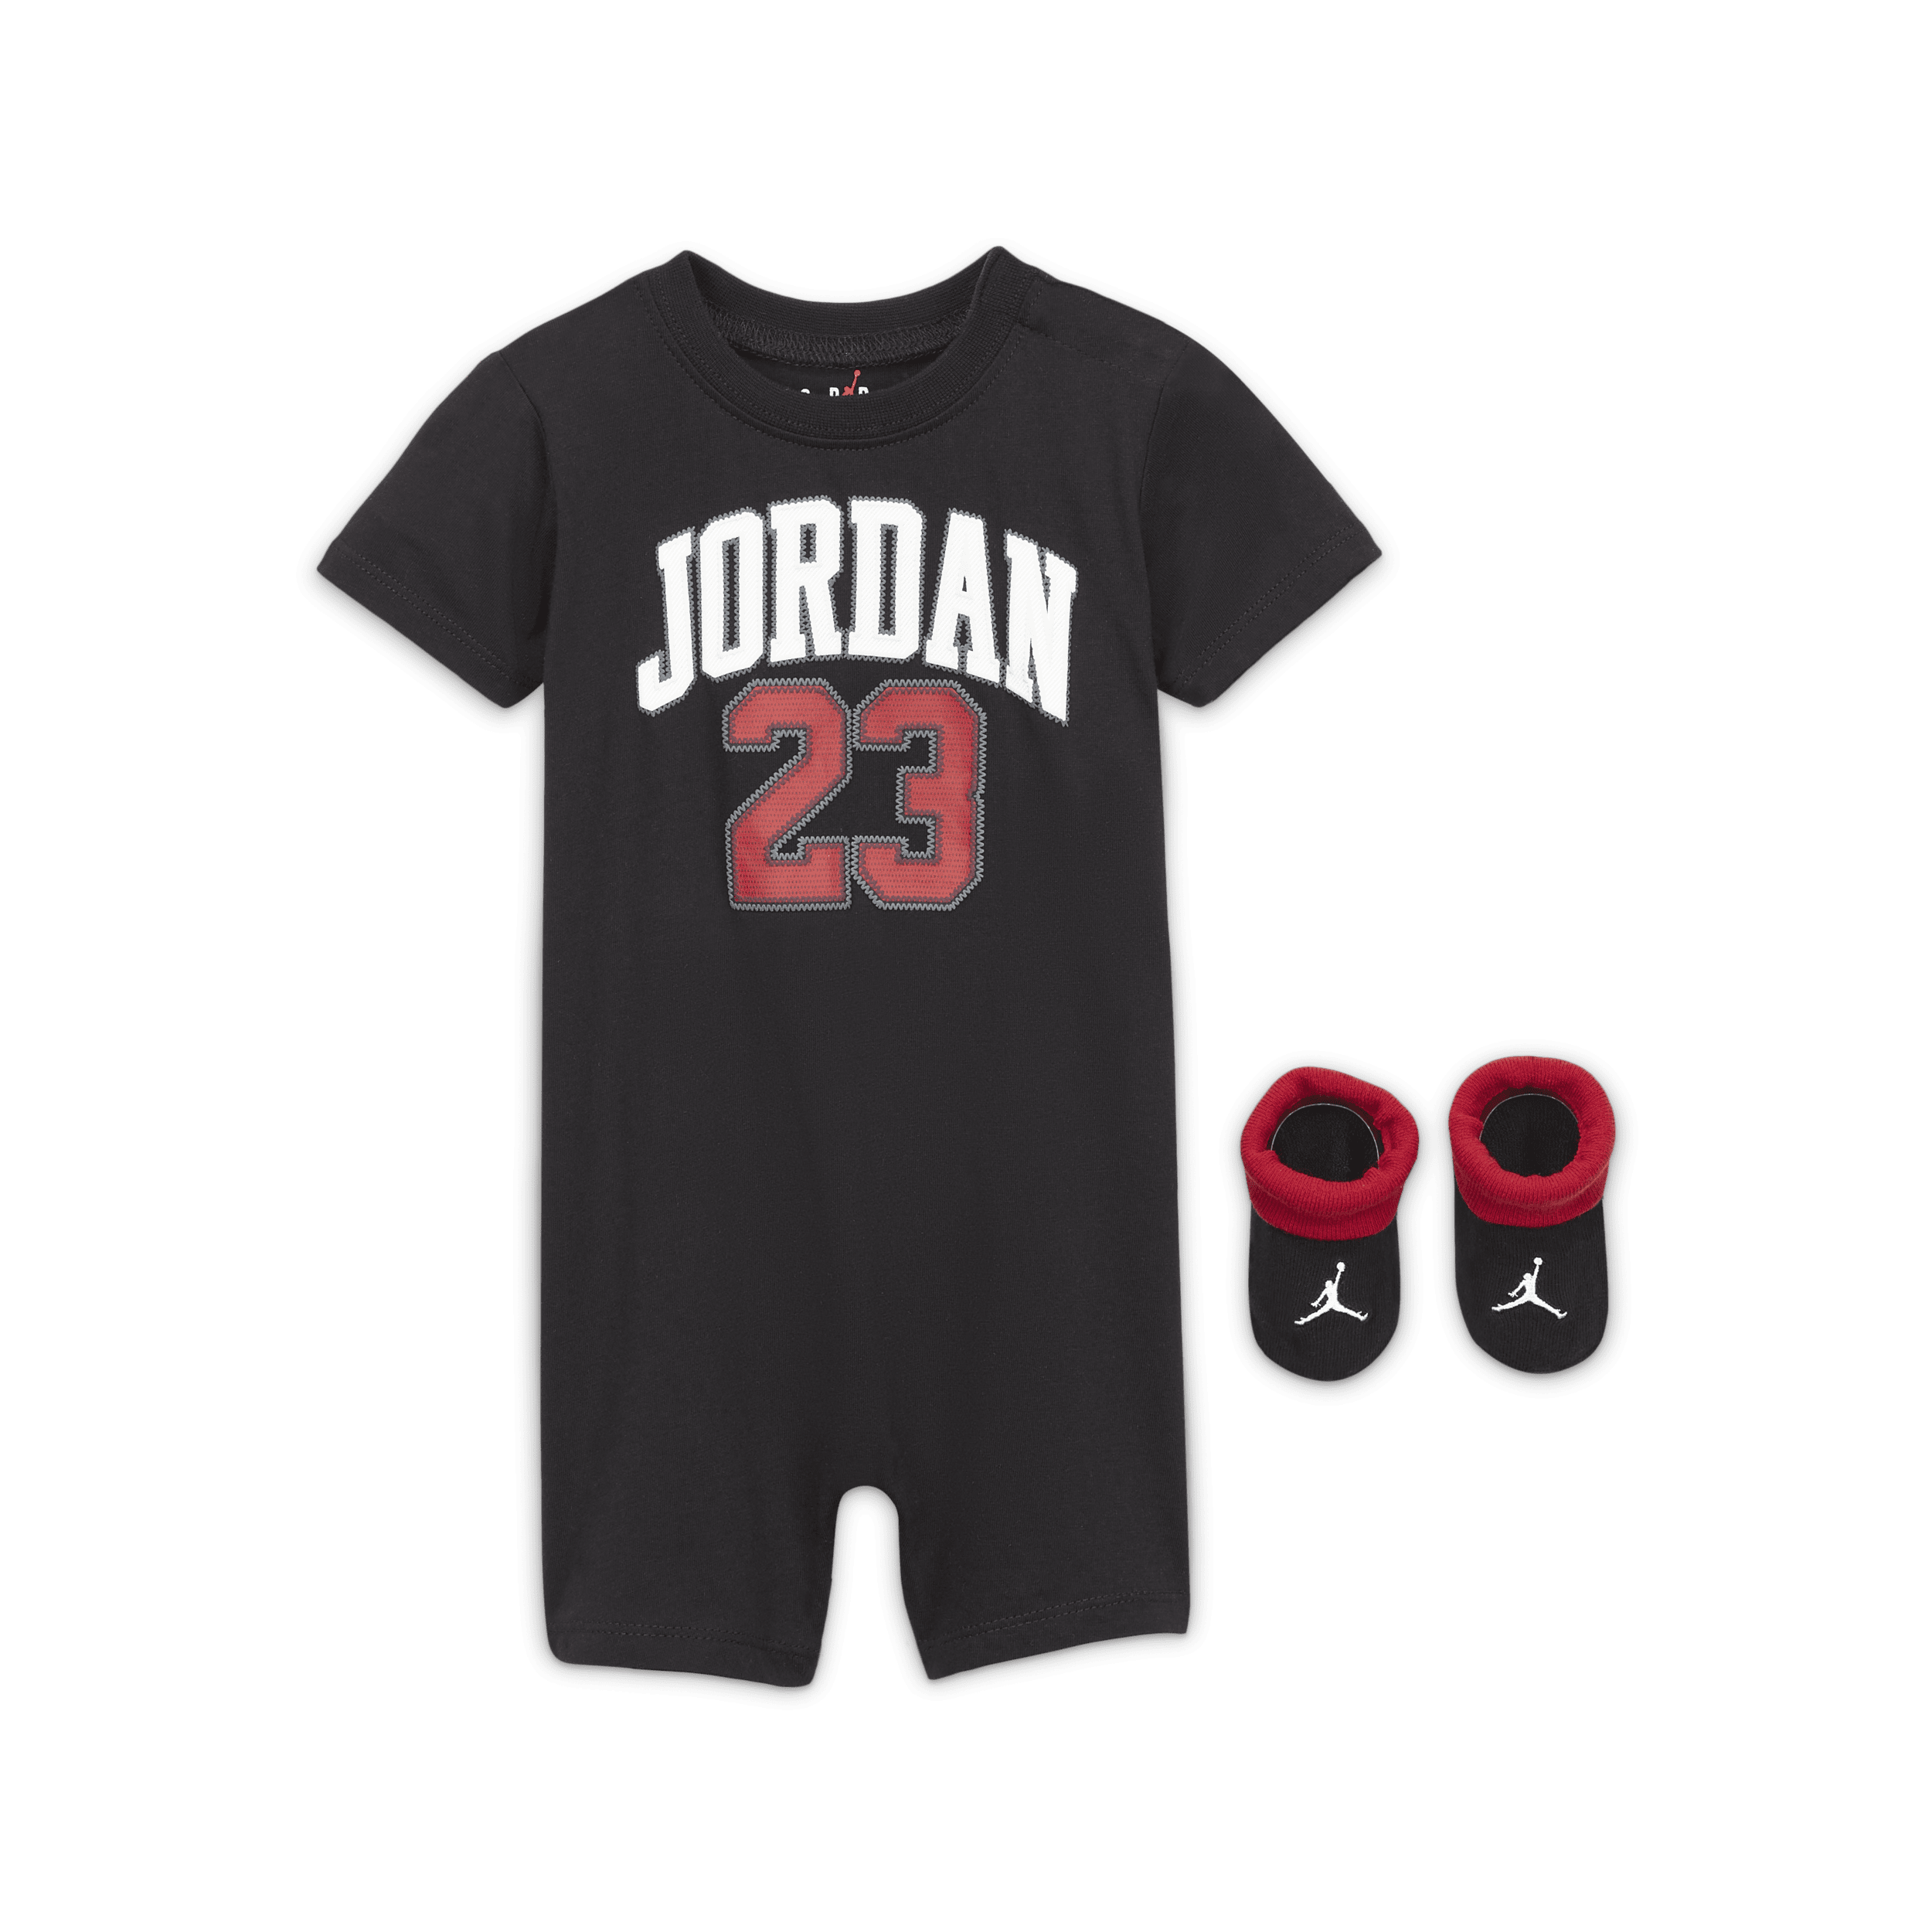 Jordan Conjunto de peto y botines - Bebé - Negro